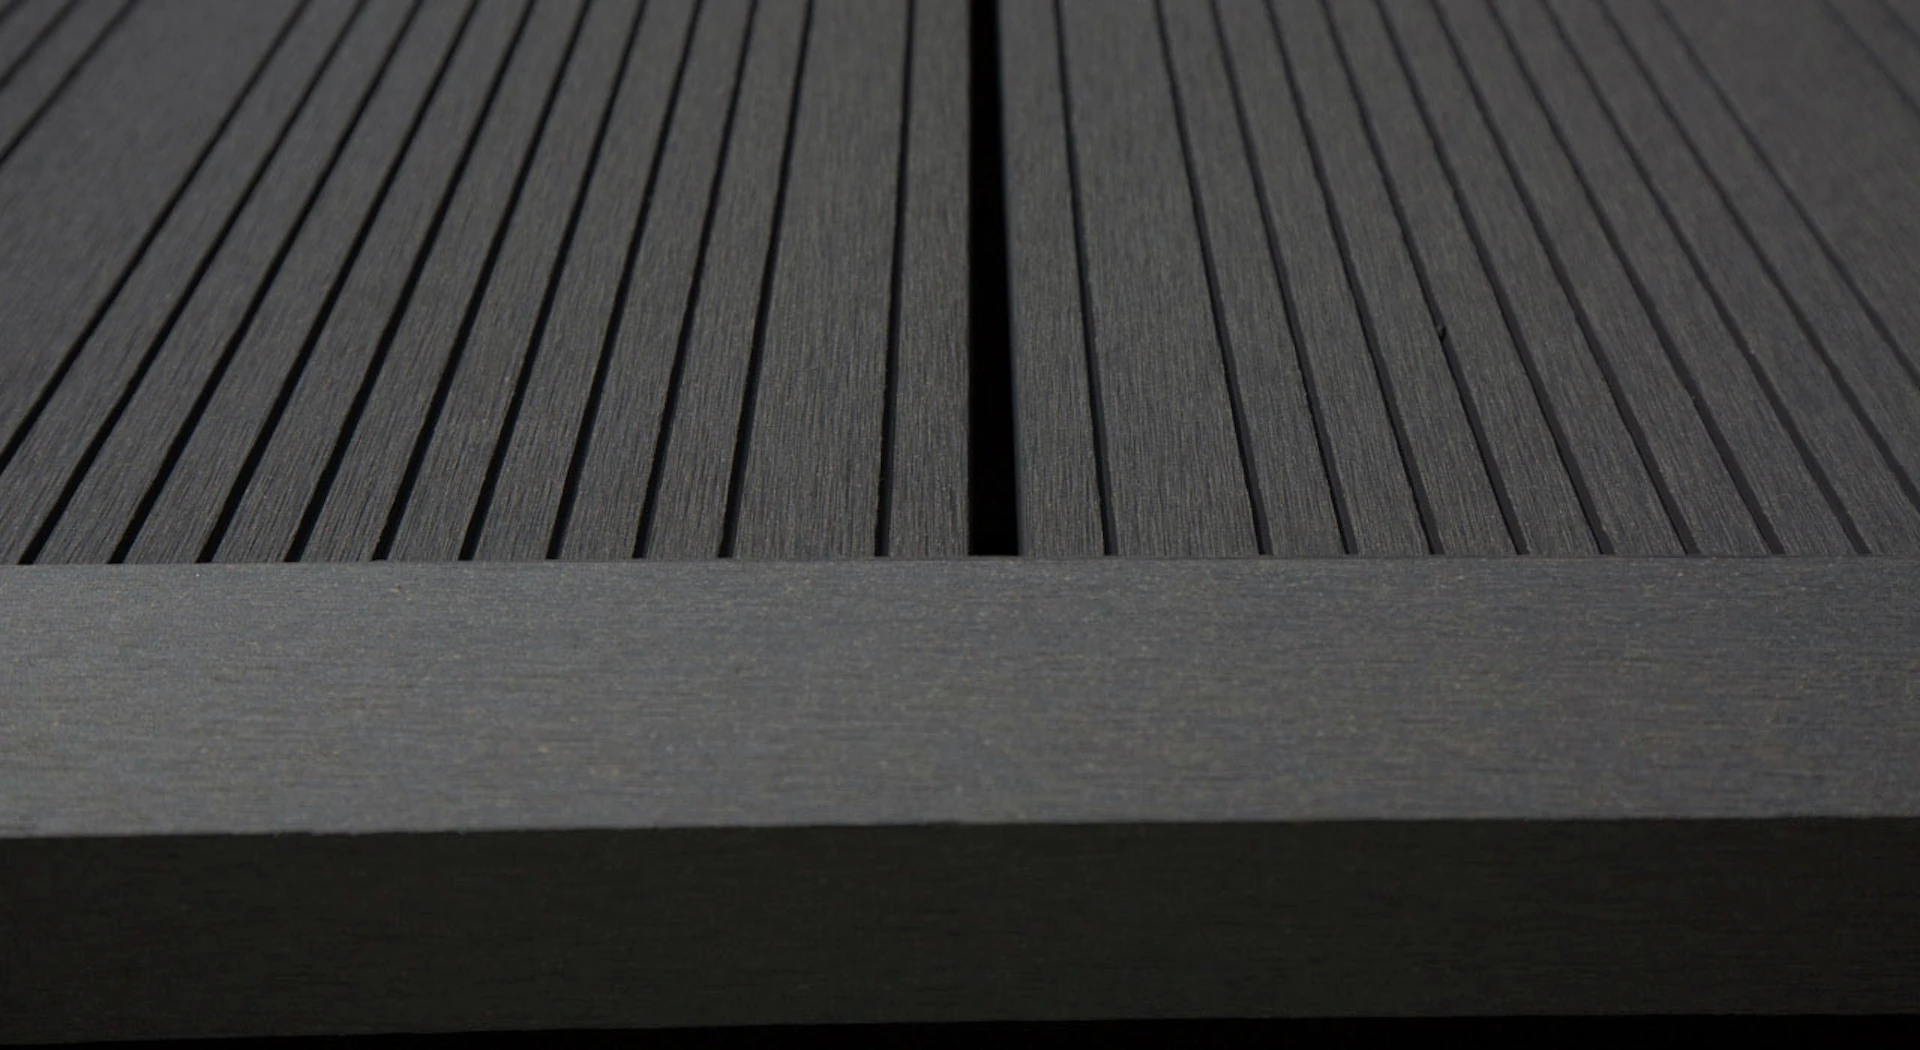 planeo WPC bande d'angle gris foncé pour planches de terrasse - 2,2m